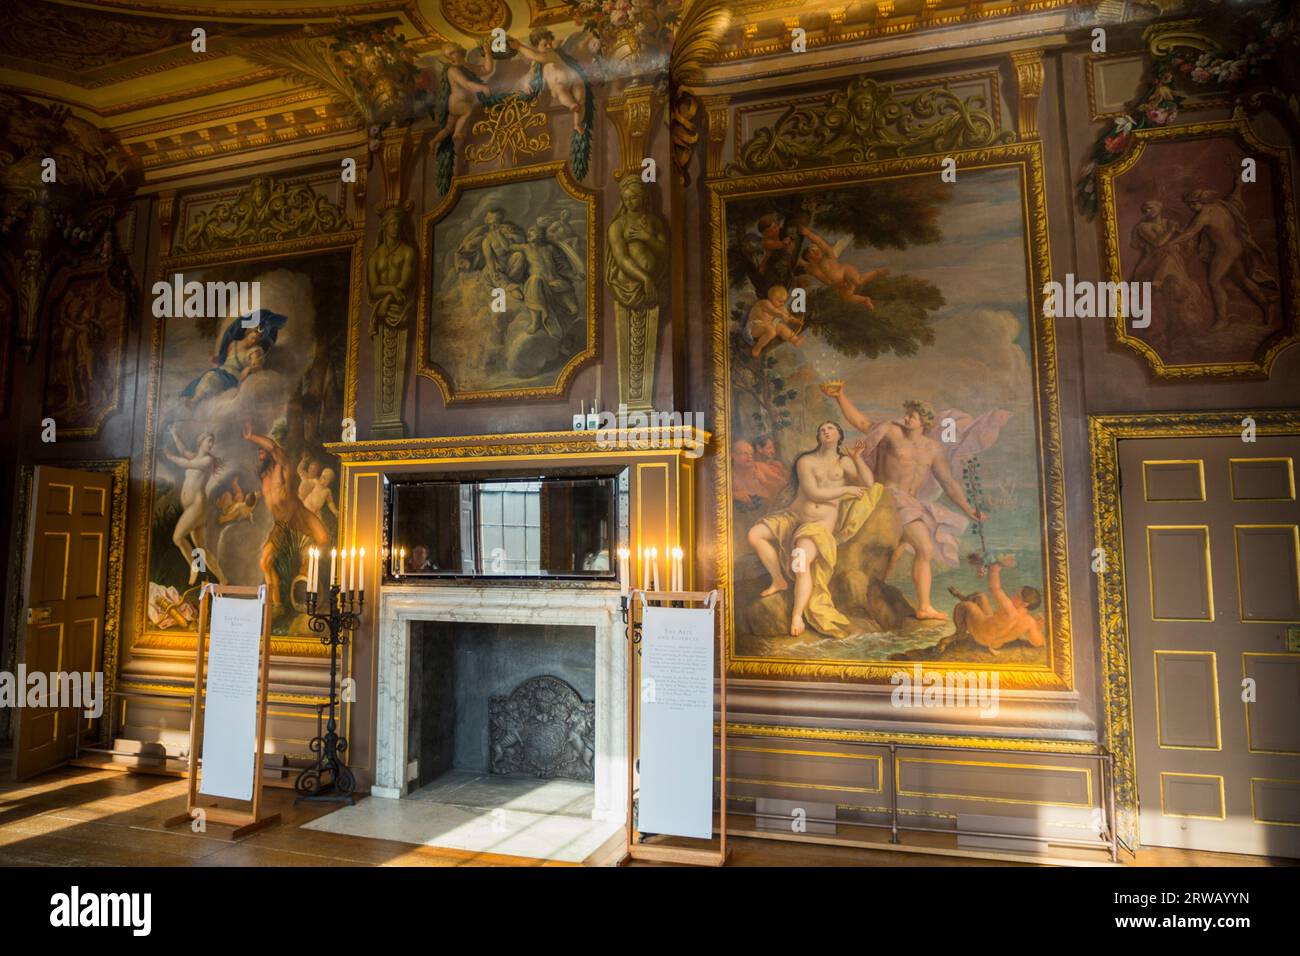 Interno della sala dipinta presso la Little Banqueting House, Hampton Court Palace, progettato dall'architetto William Talman per Guglielmo III, alias Re Guglielmo d'Orange. (135) Foto Stock